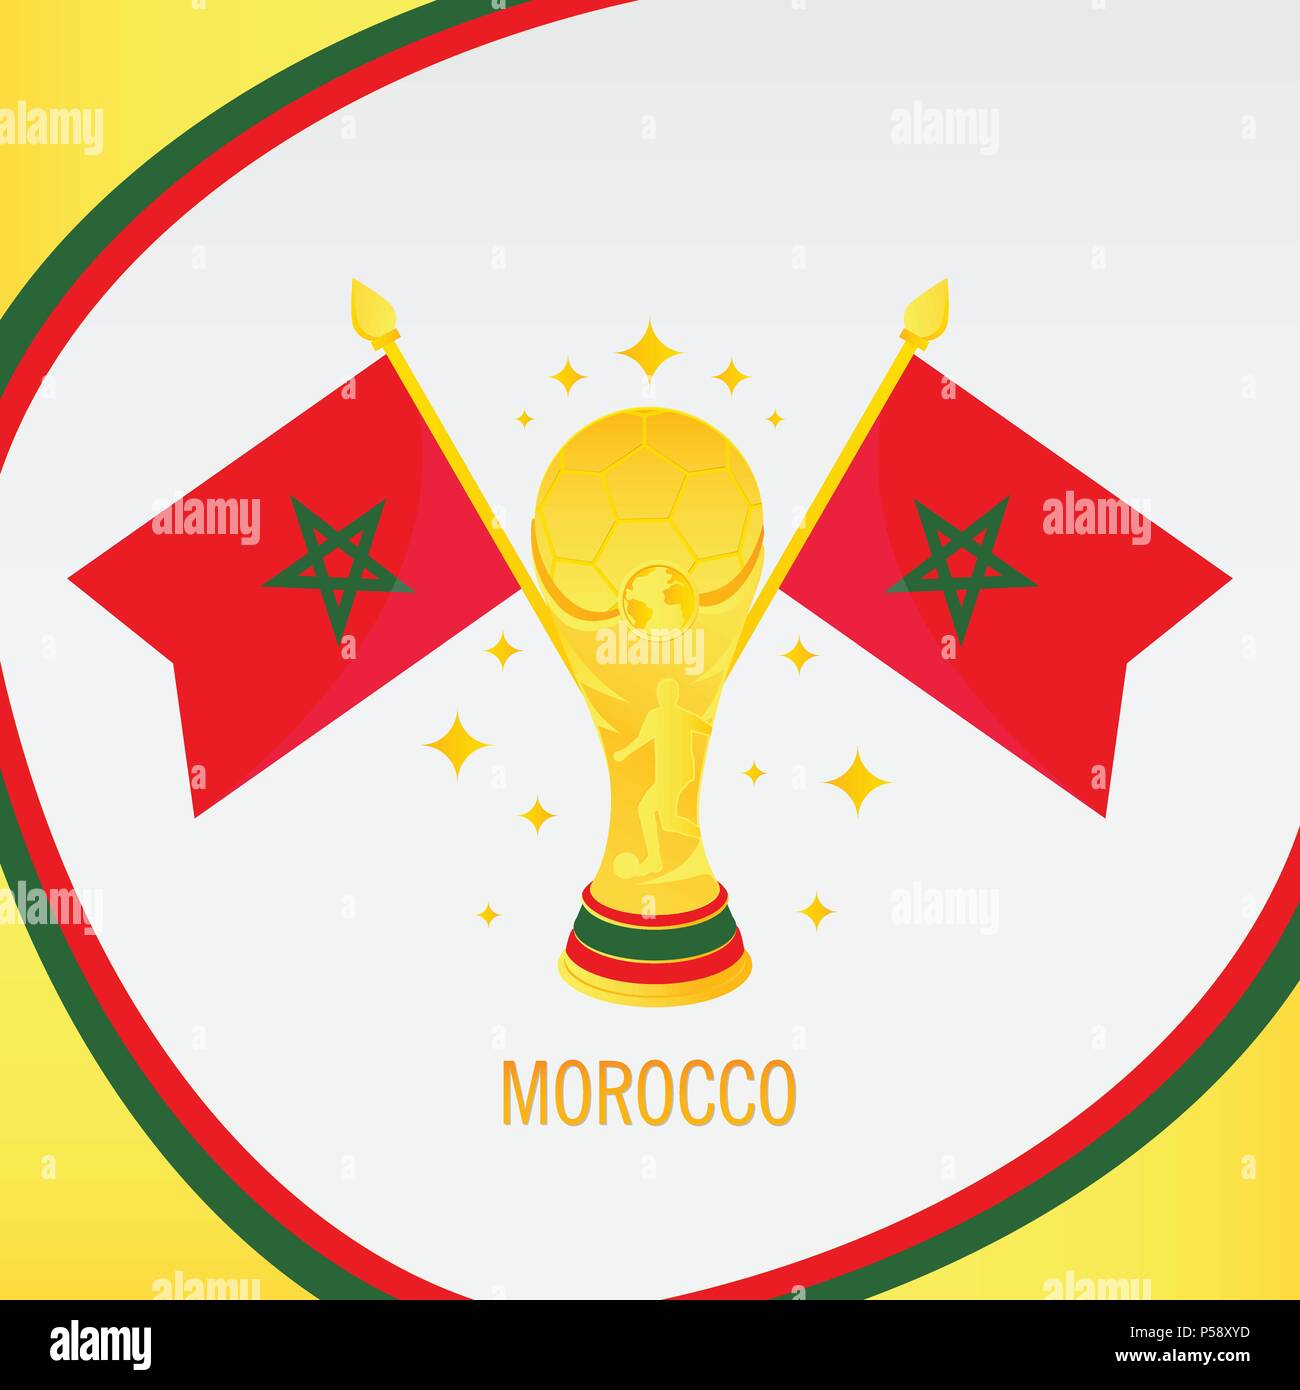 Il Marocco campione di calcio 2018 - Bandiera e Golden Trophy / Cup Illustrazione Vettoriale